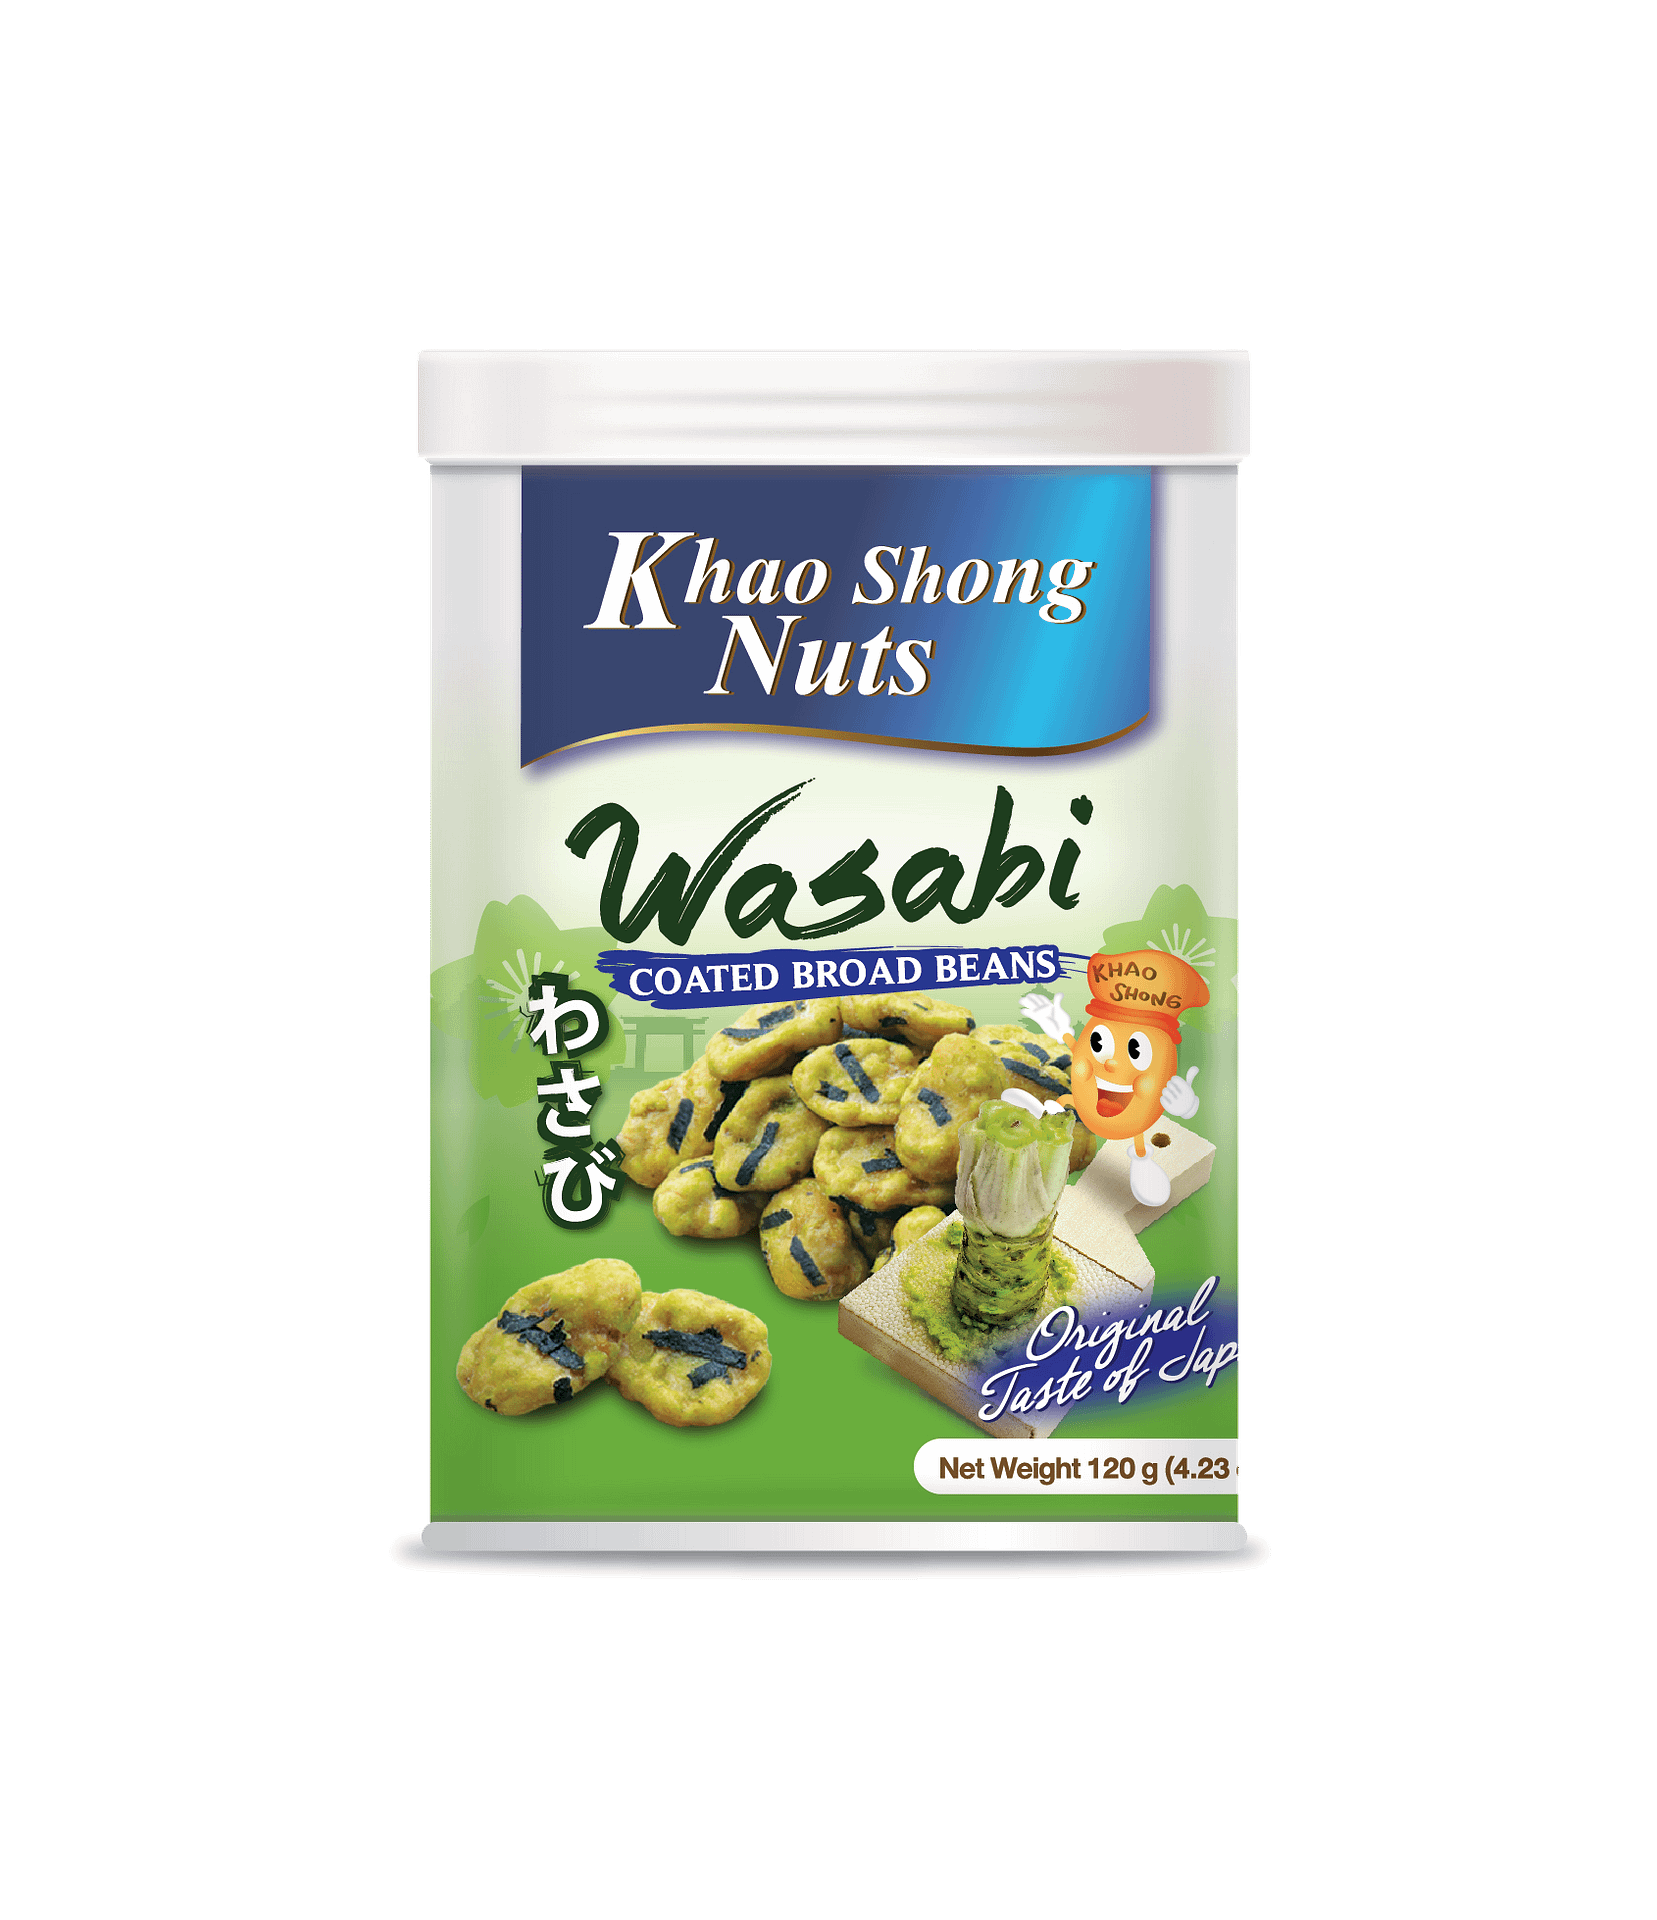 Khao Shong Nuts - Wasabi Coated Broad Beans